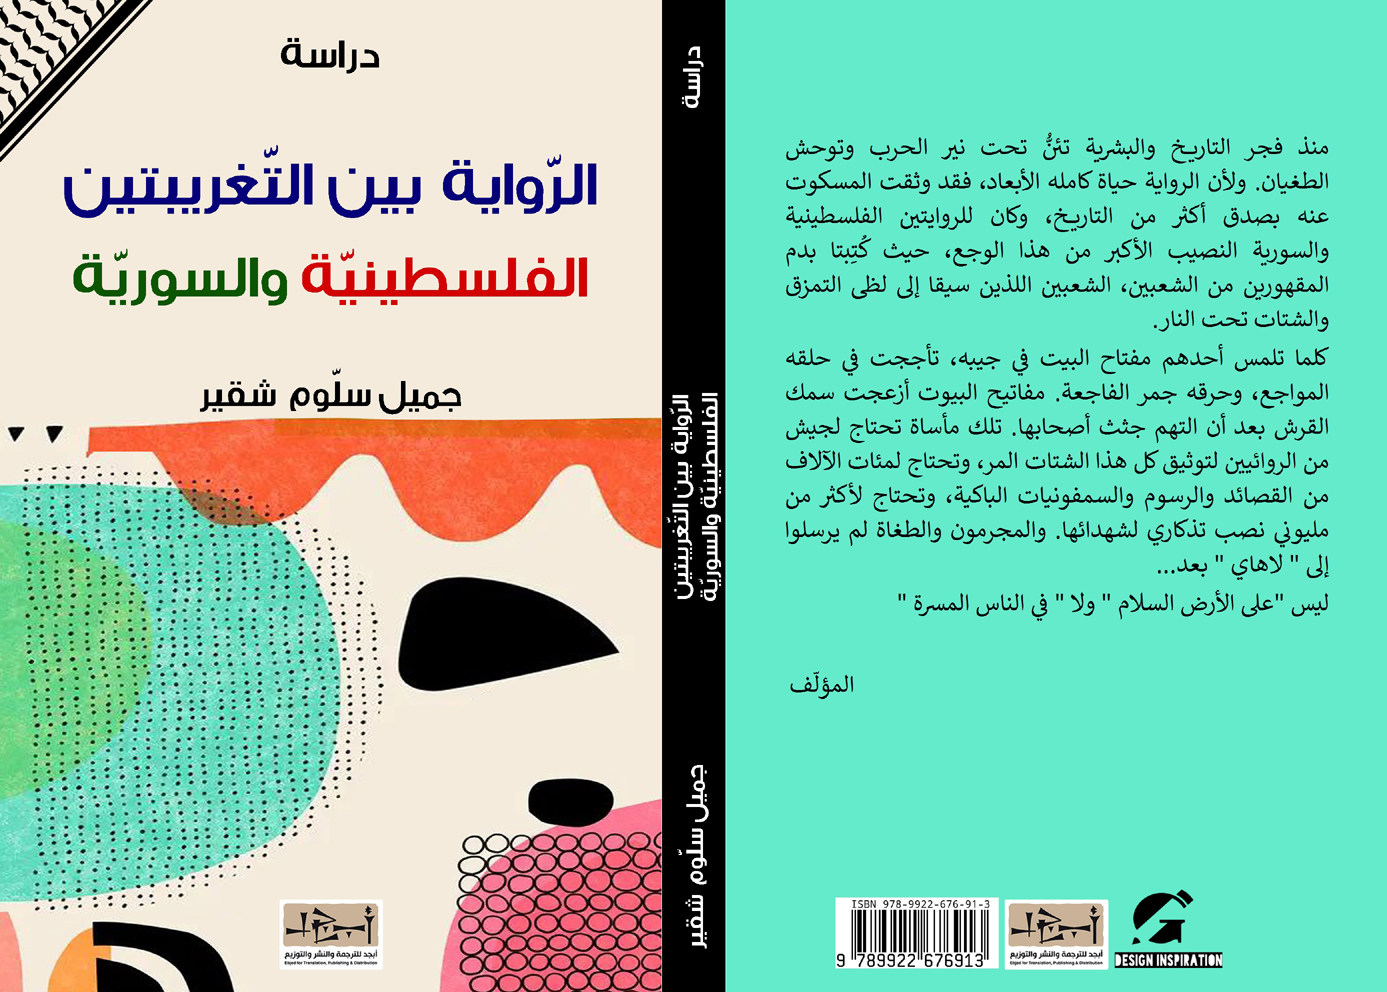 الرواية بين التغريبتين الفلسطينيّة والسوريّة - دراسة - جميل سلوم شقير